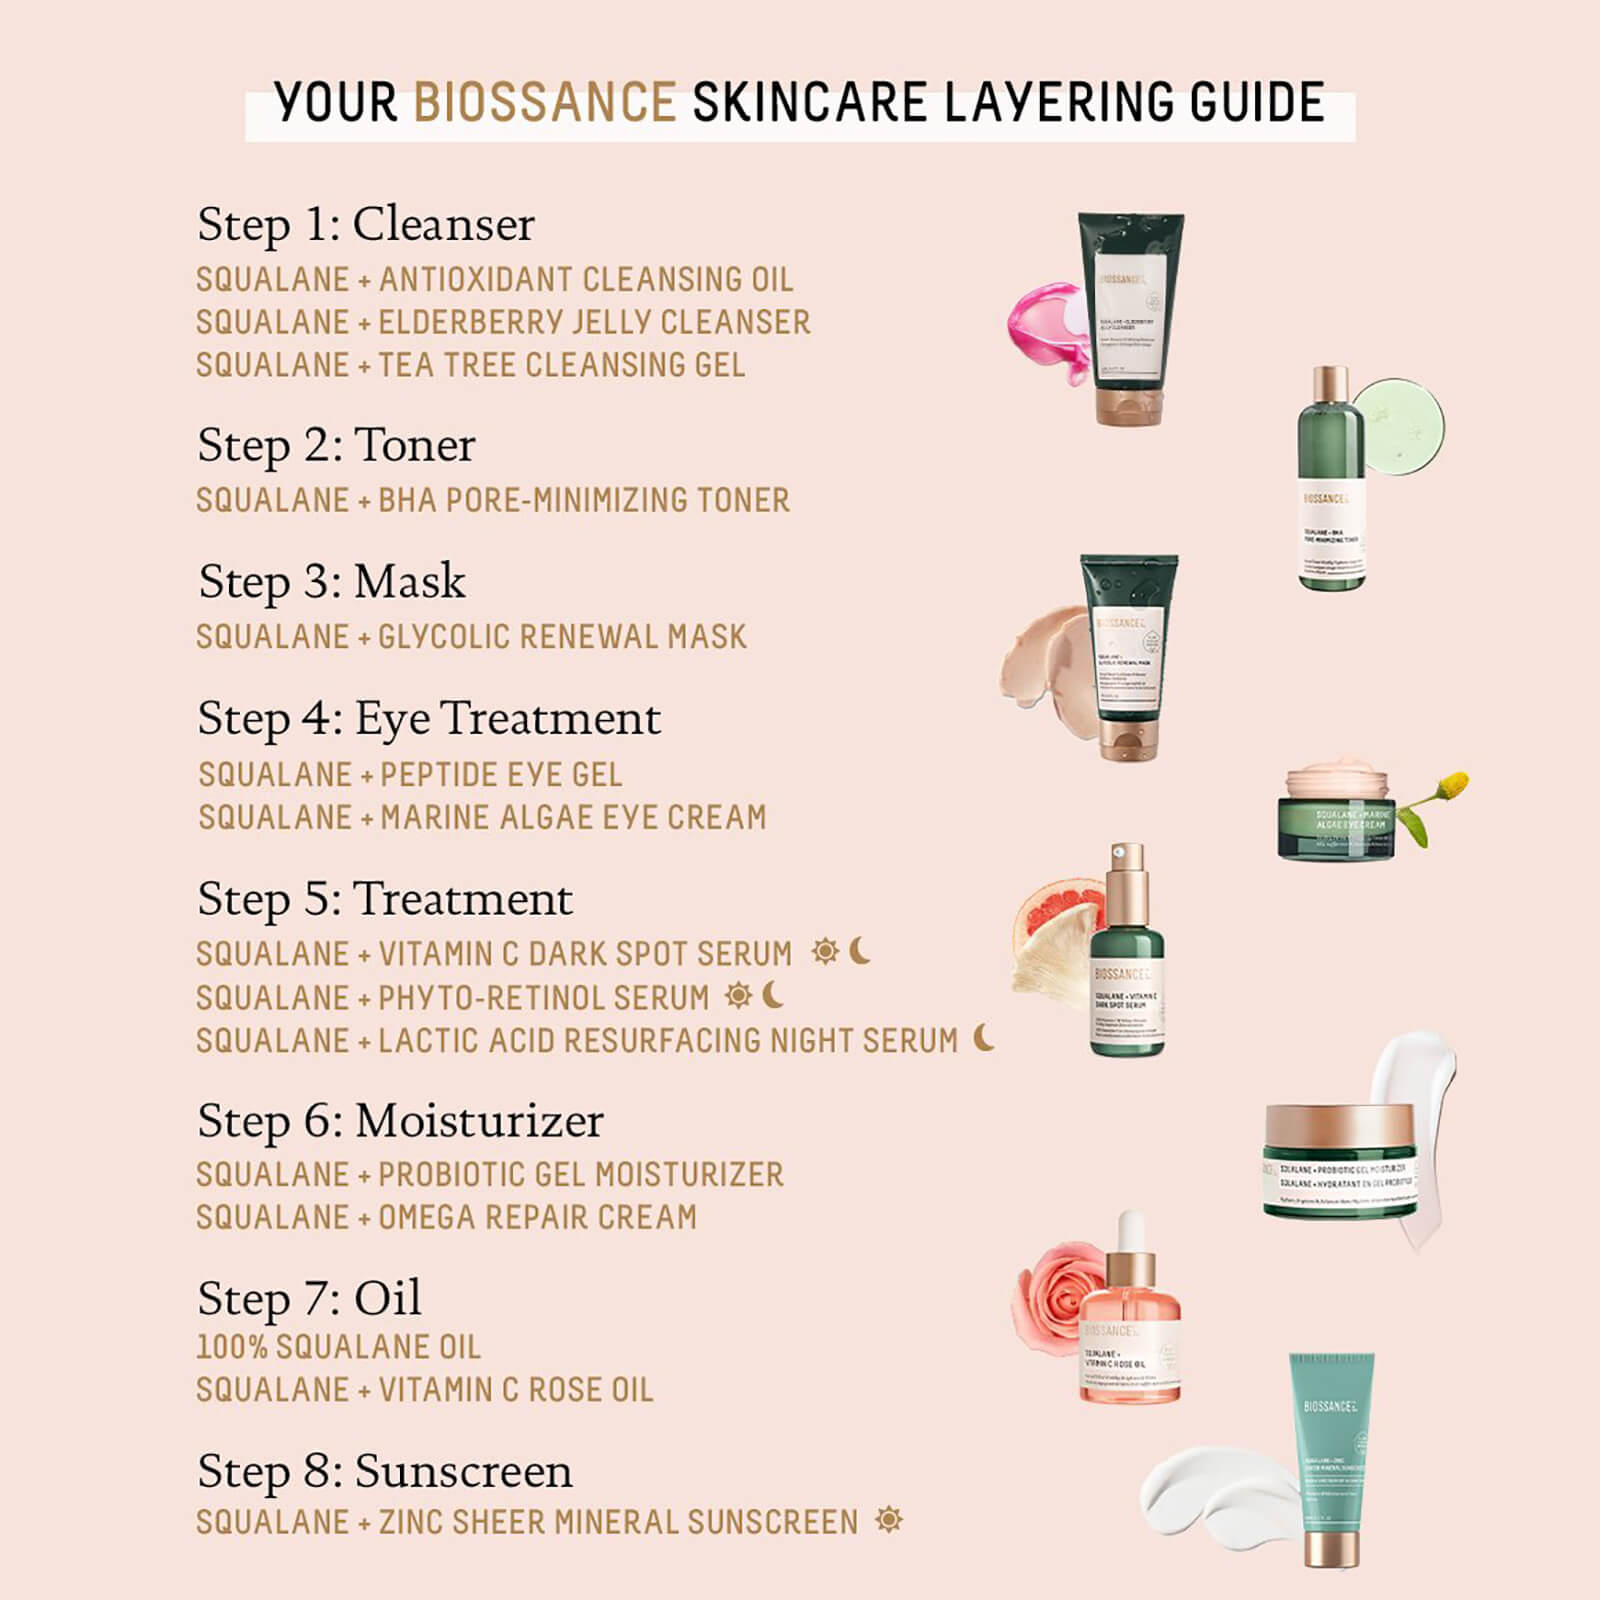 Skincare layering guide